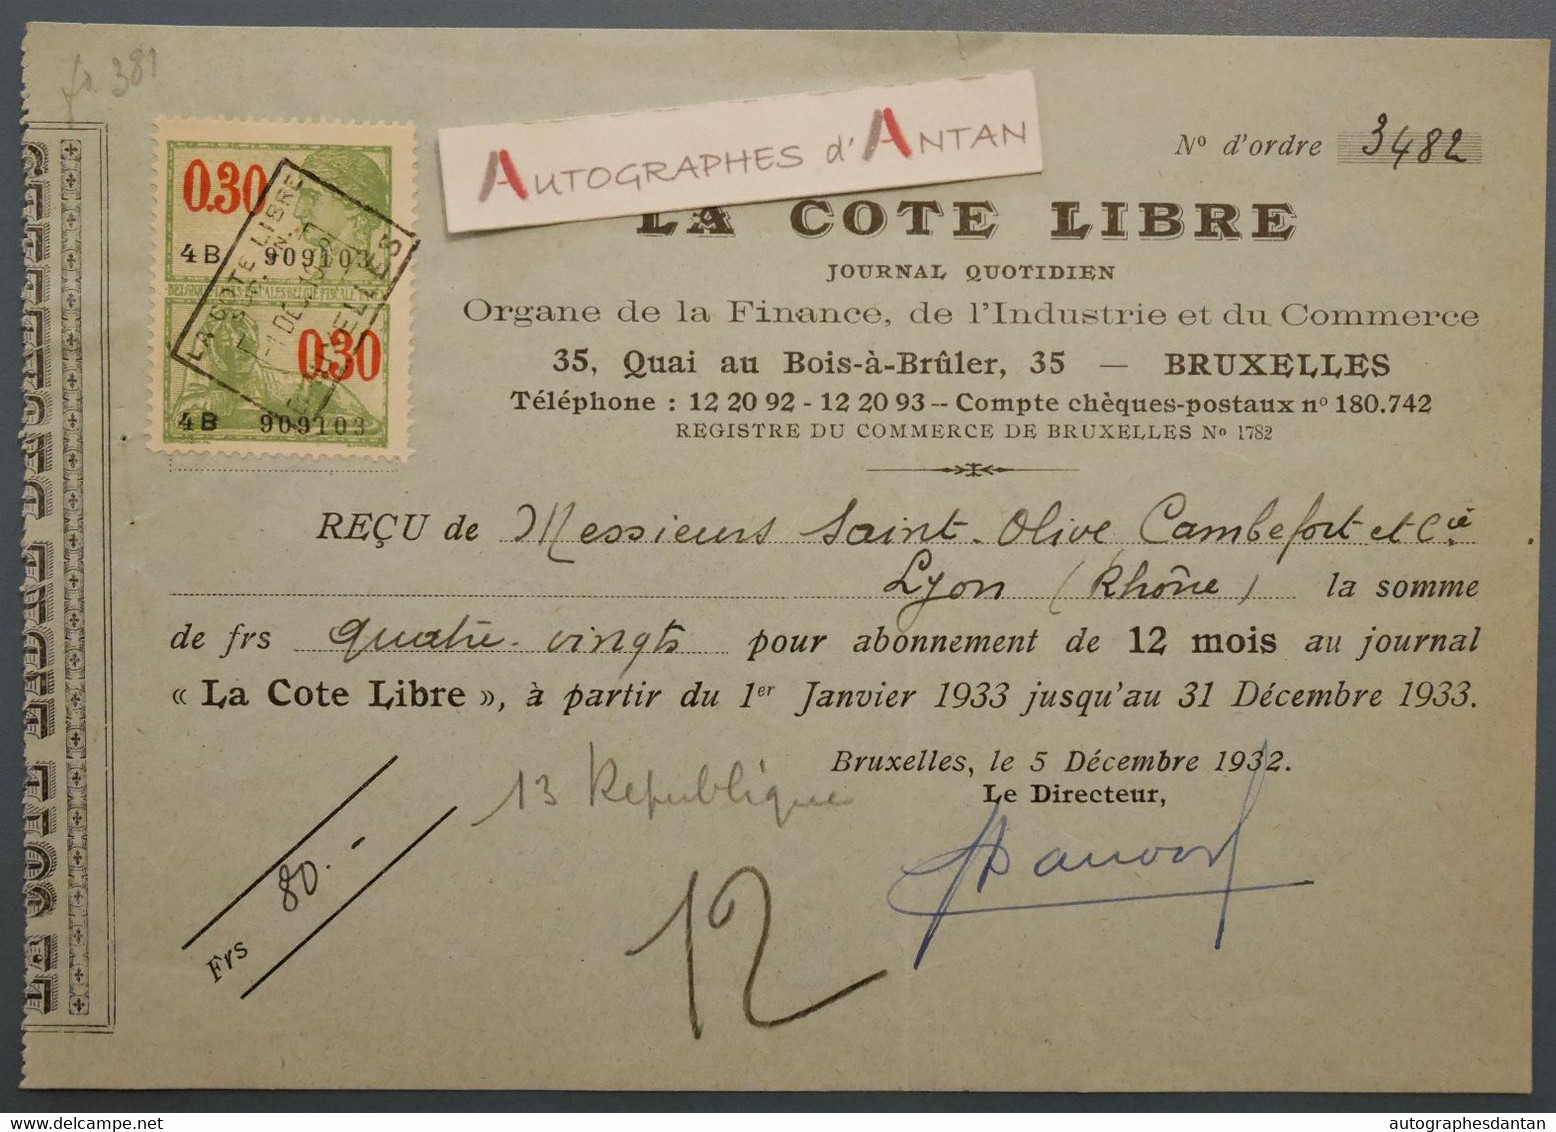 1932 Bruxelles La Cote Libre Journal Quotidien - Reçu Mrs Saint Olive Cambefort à Lyon - France Belgique - Timbre Fiscal - Banco & Caja De Ahorros